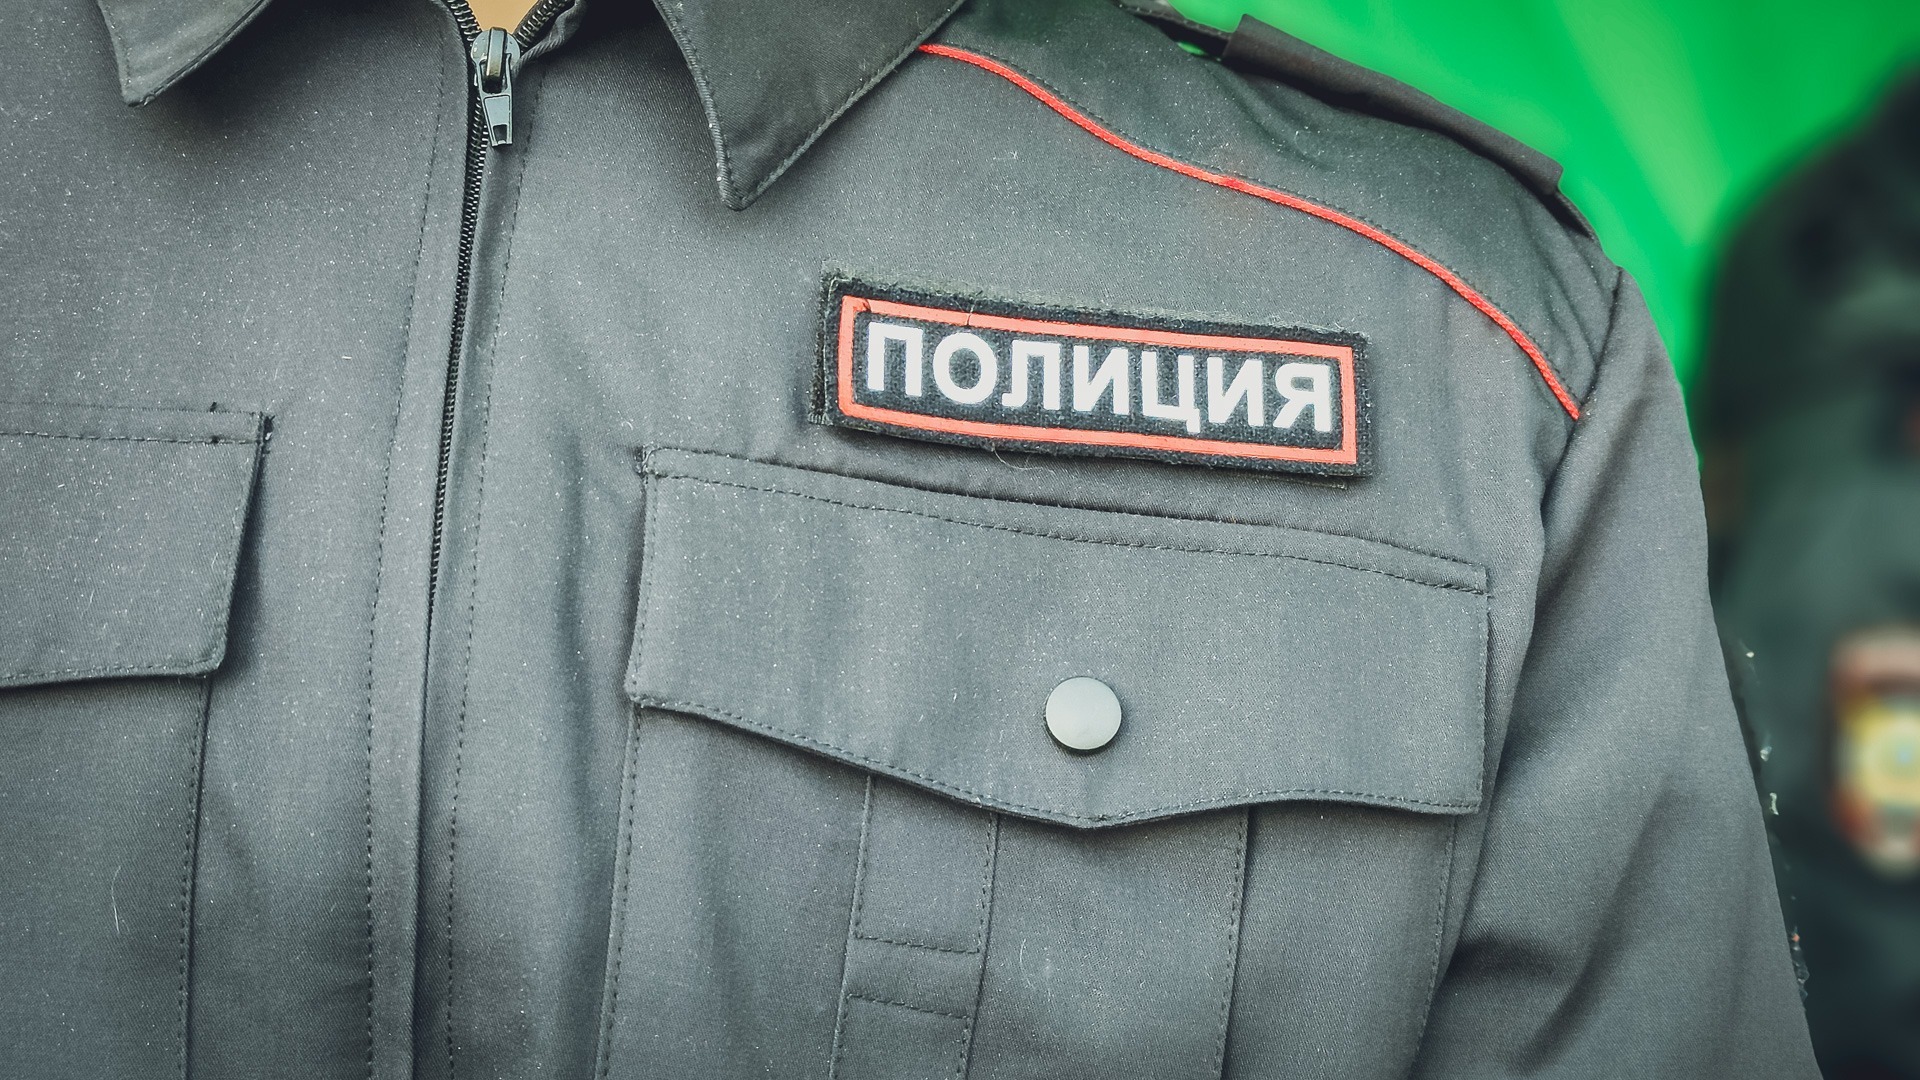 Обманутый на 2,5 млн рублей бухгалтер в нижегородской мэрии не найден